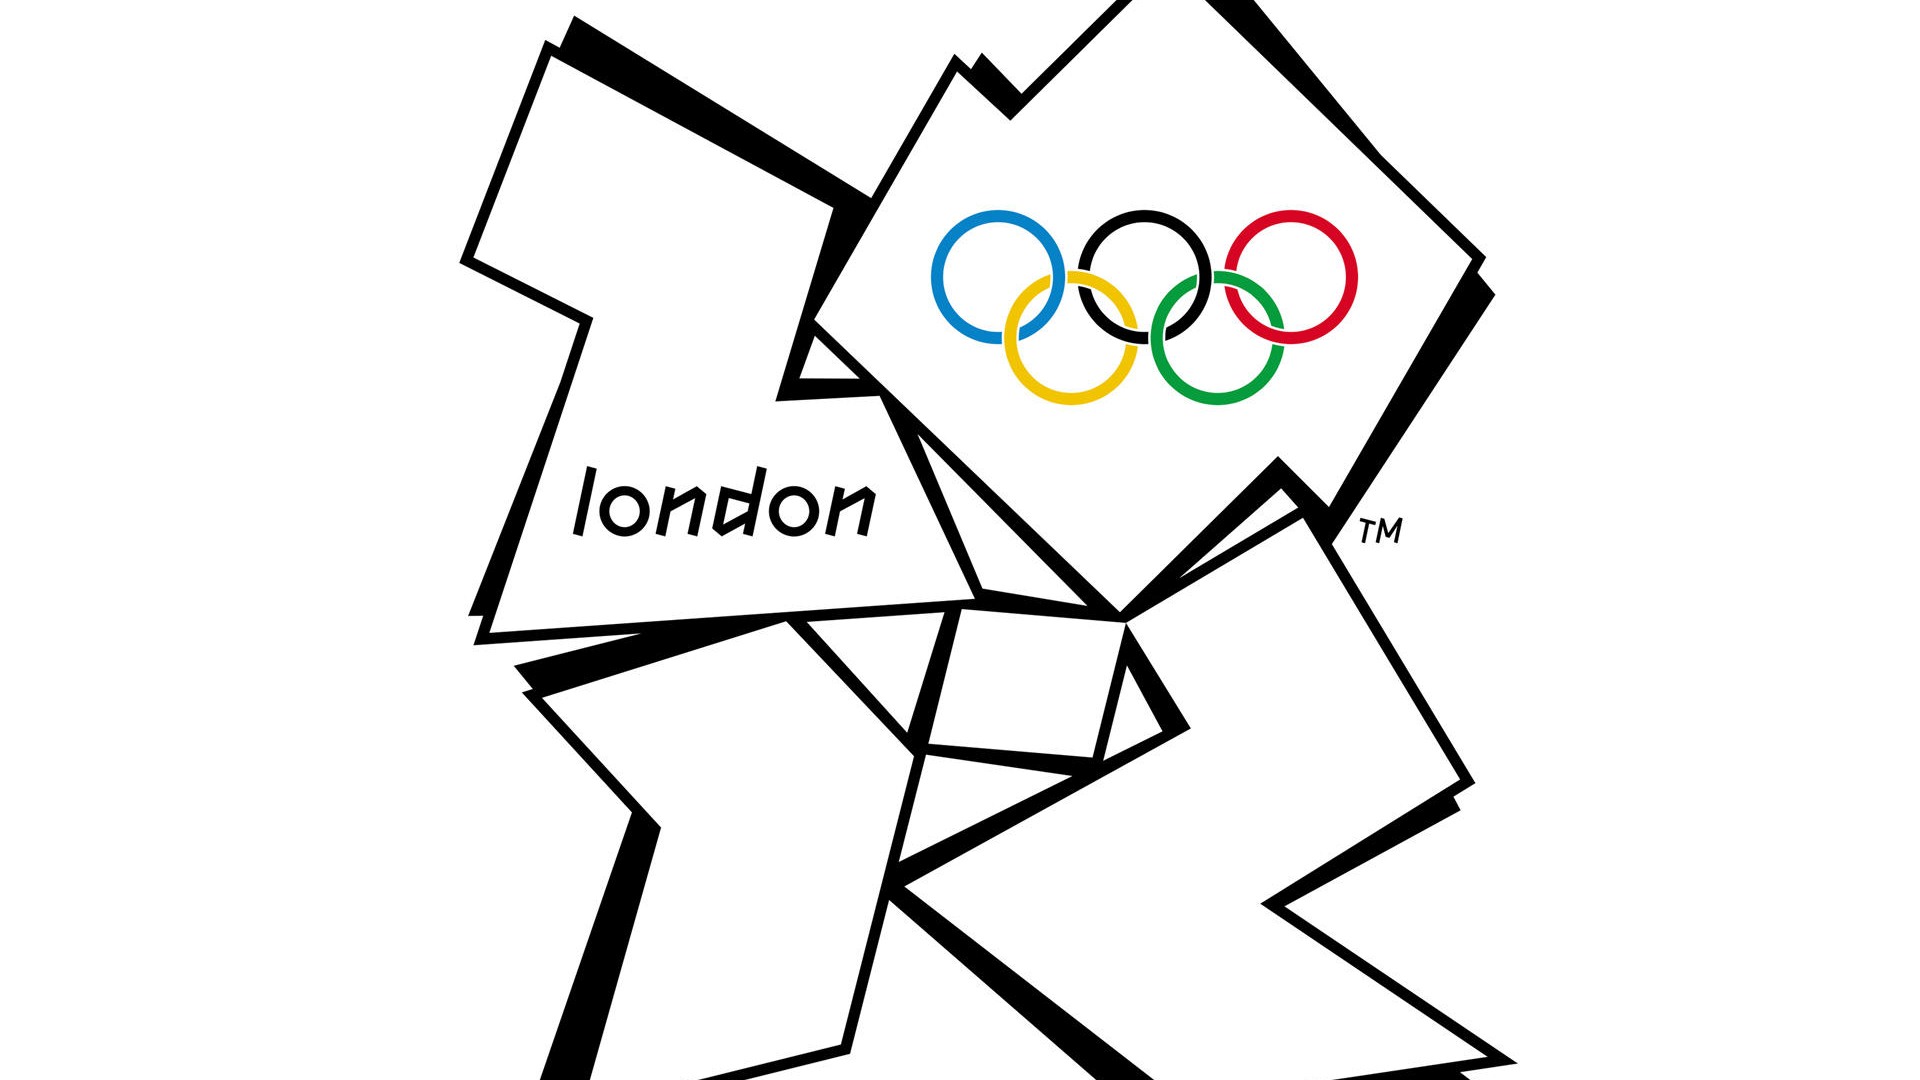 Londres 2012 Olimpiadas fondos temáticos (2) #14 - 1920x1080